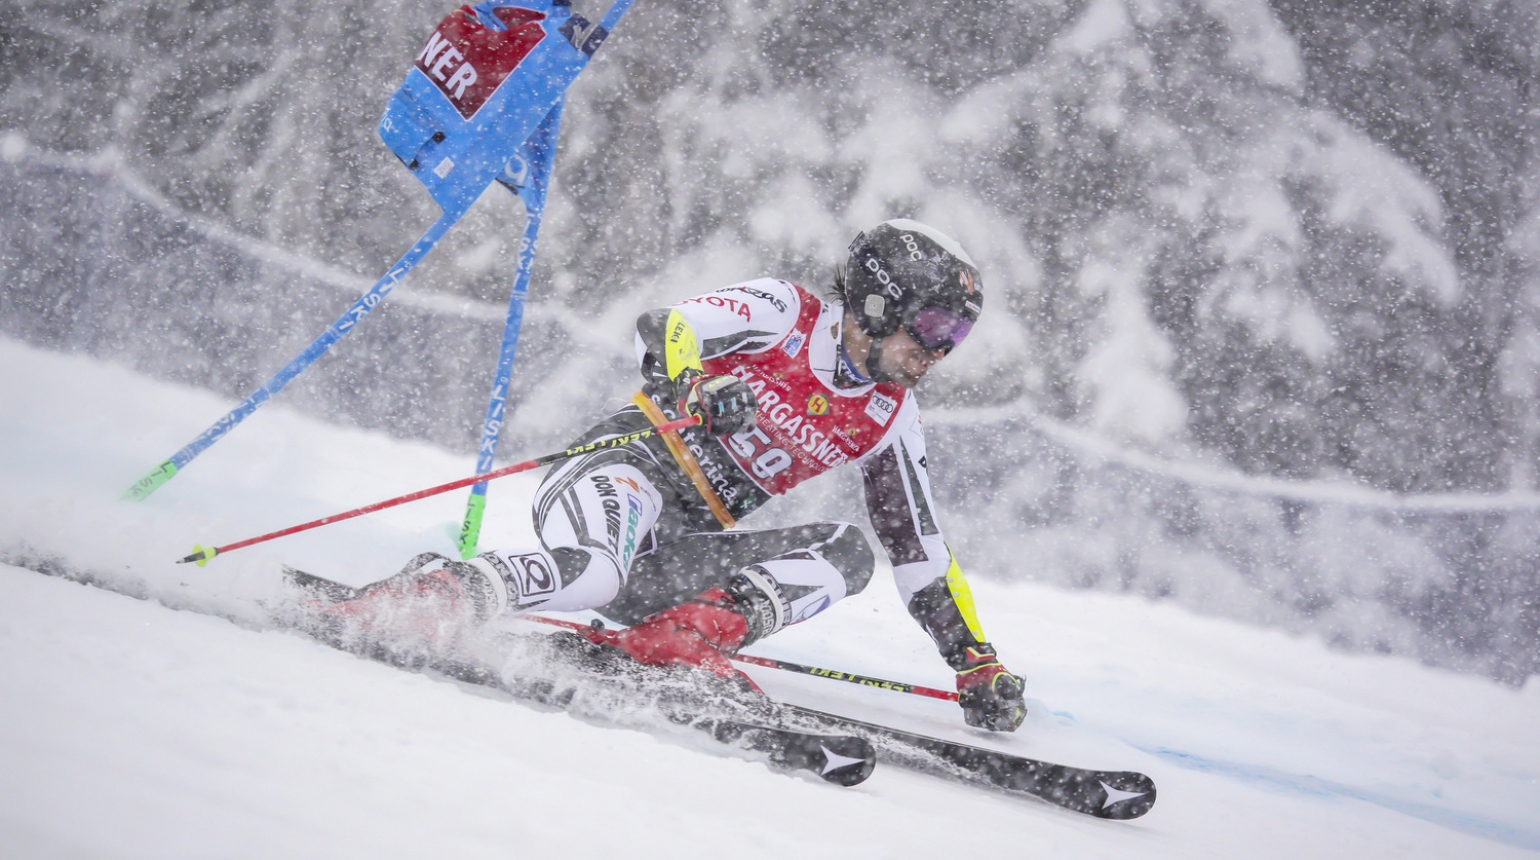 První obří slalom v Santa Caterině vyhrál Zubčić, Krýzlovi chybělo šestatřicet setin na postup